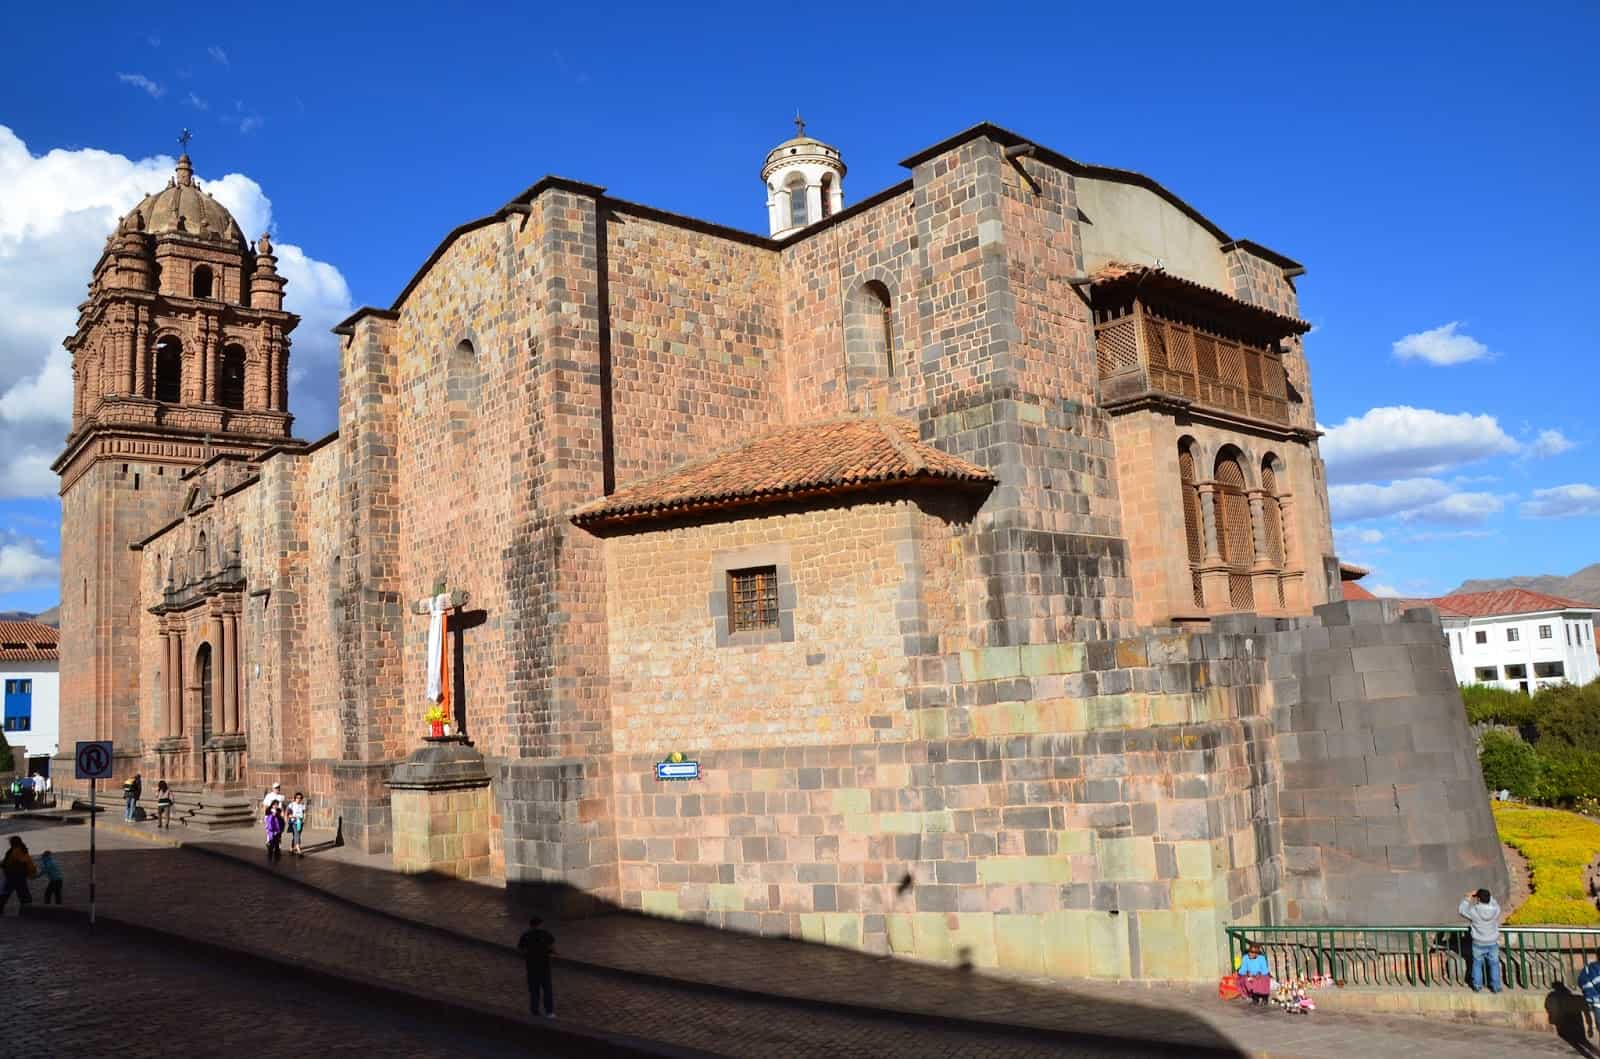 Qorikancha and Iglesia de Santo Domingo in Cusco, Peru